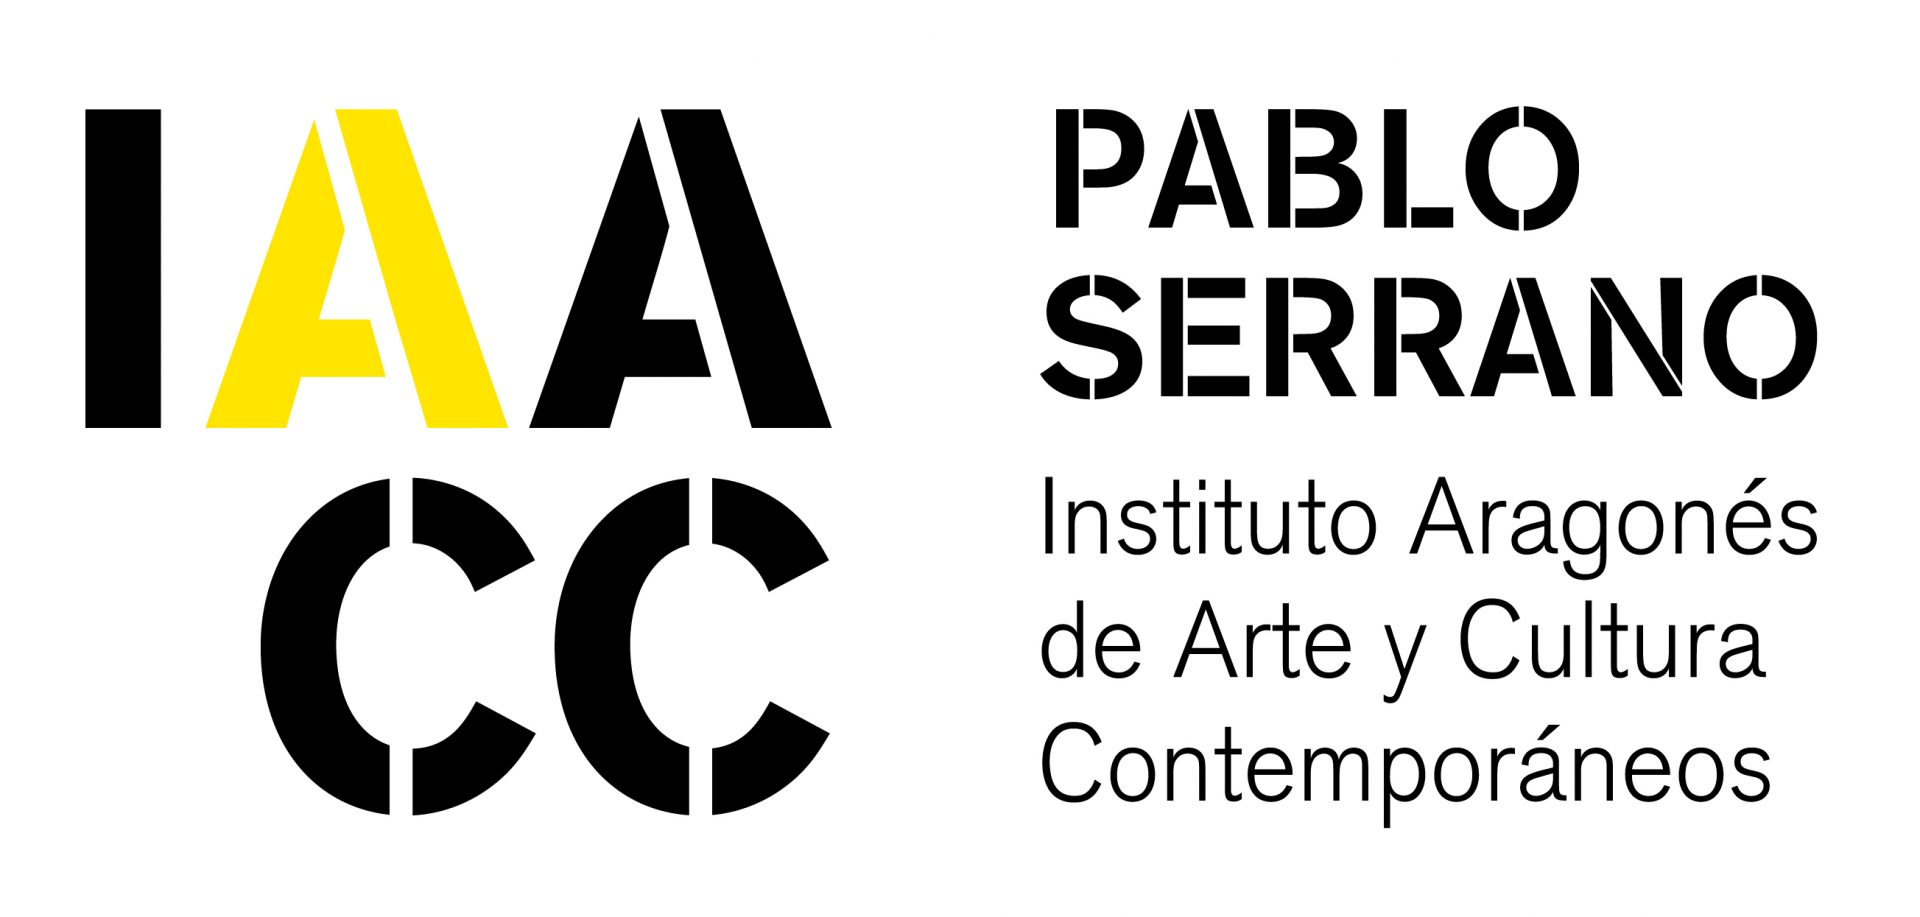 IACC Plablo Serrano logo